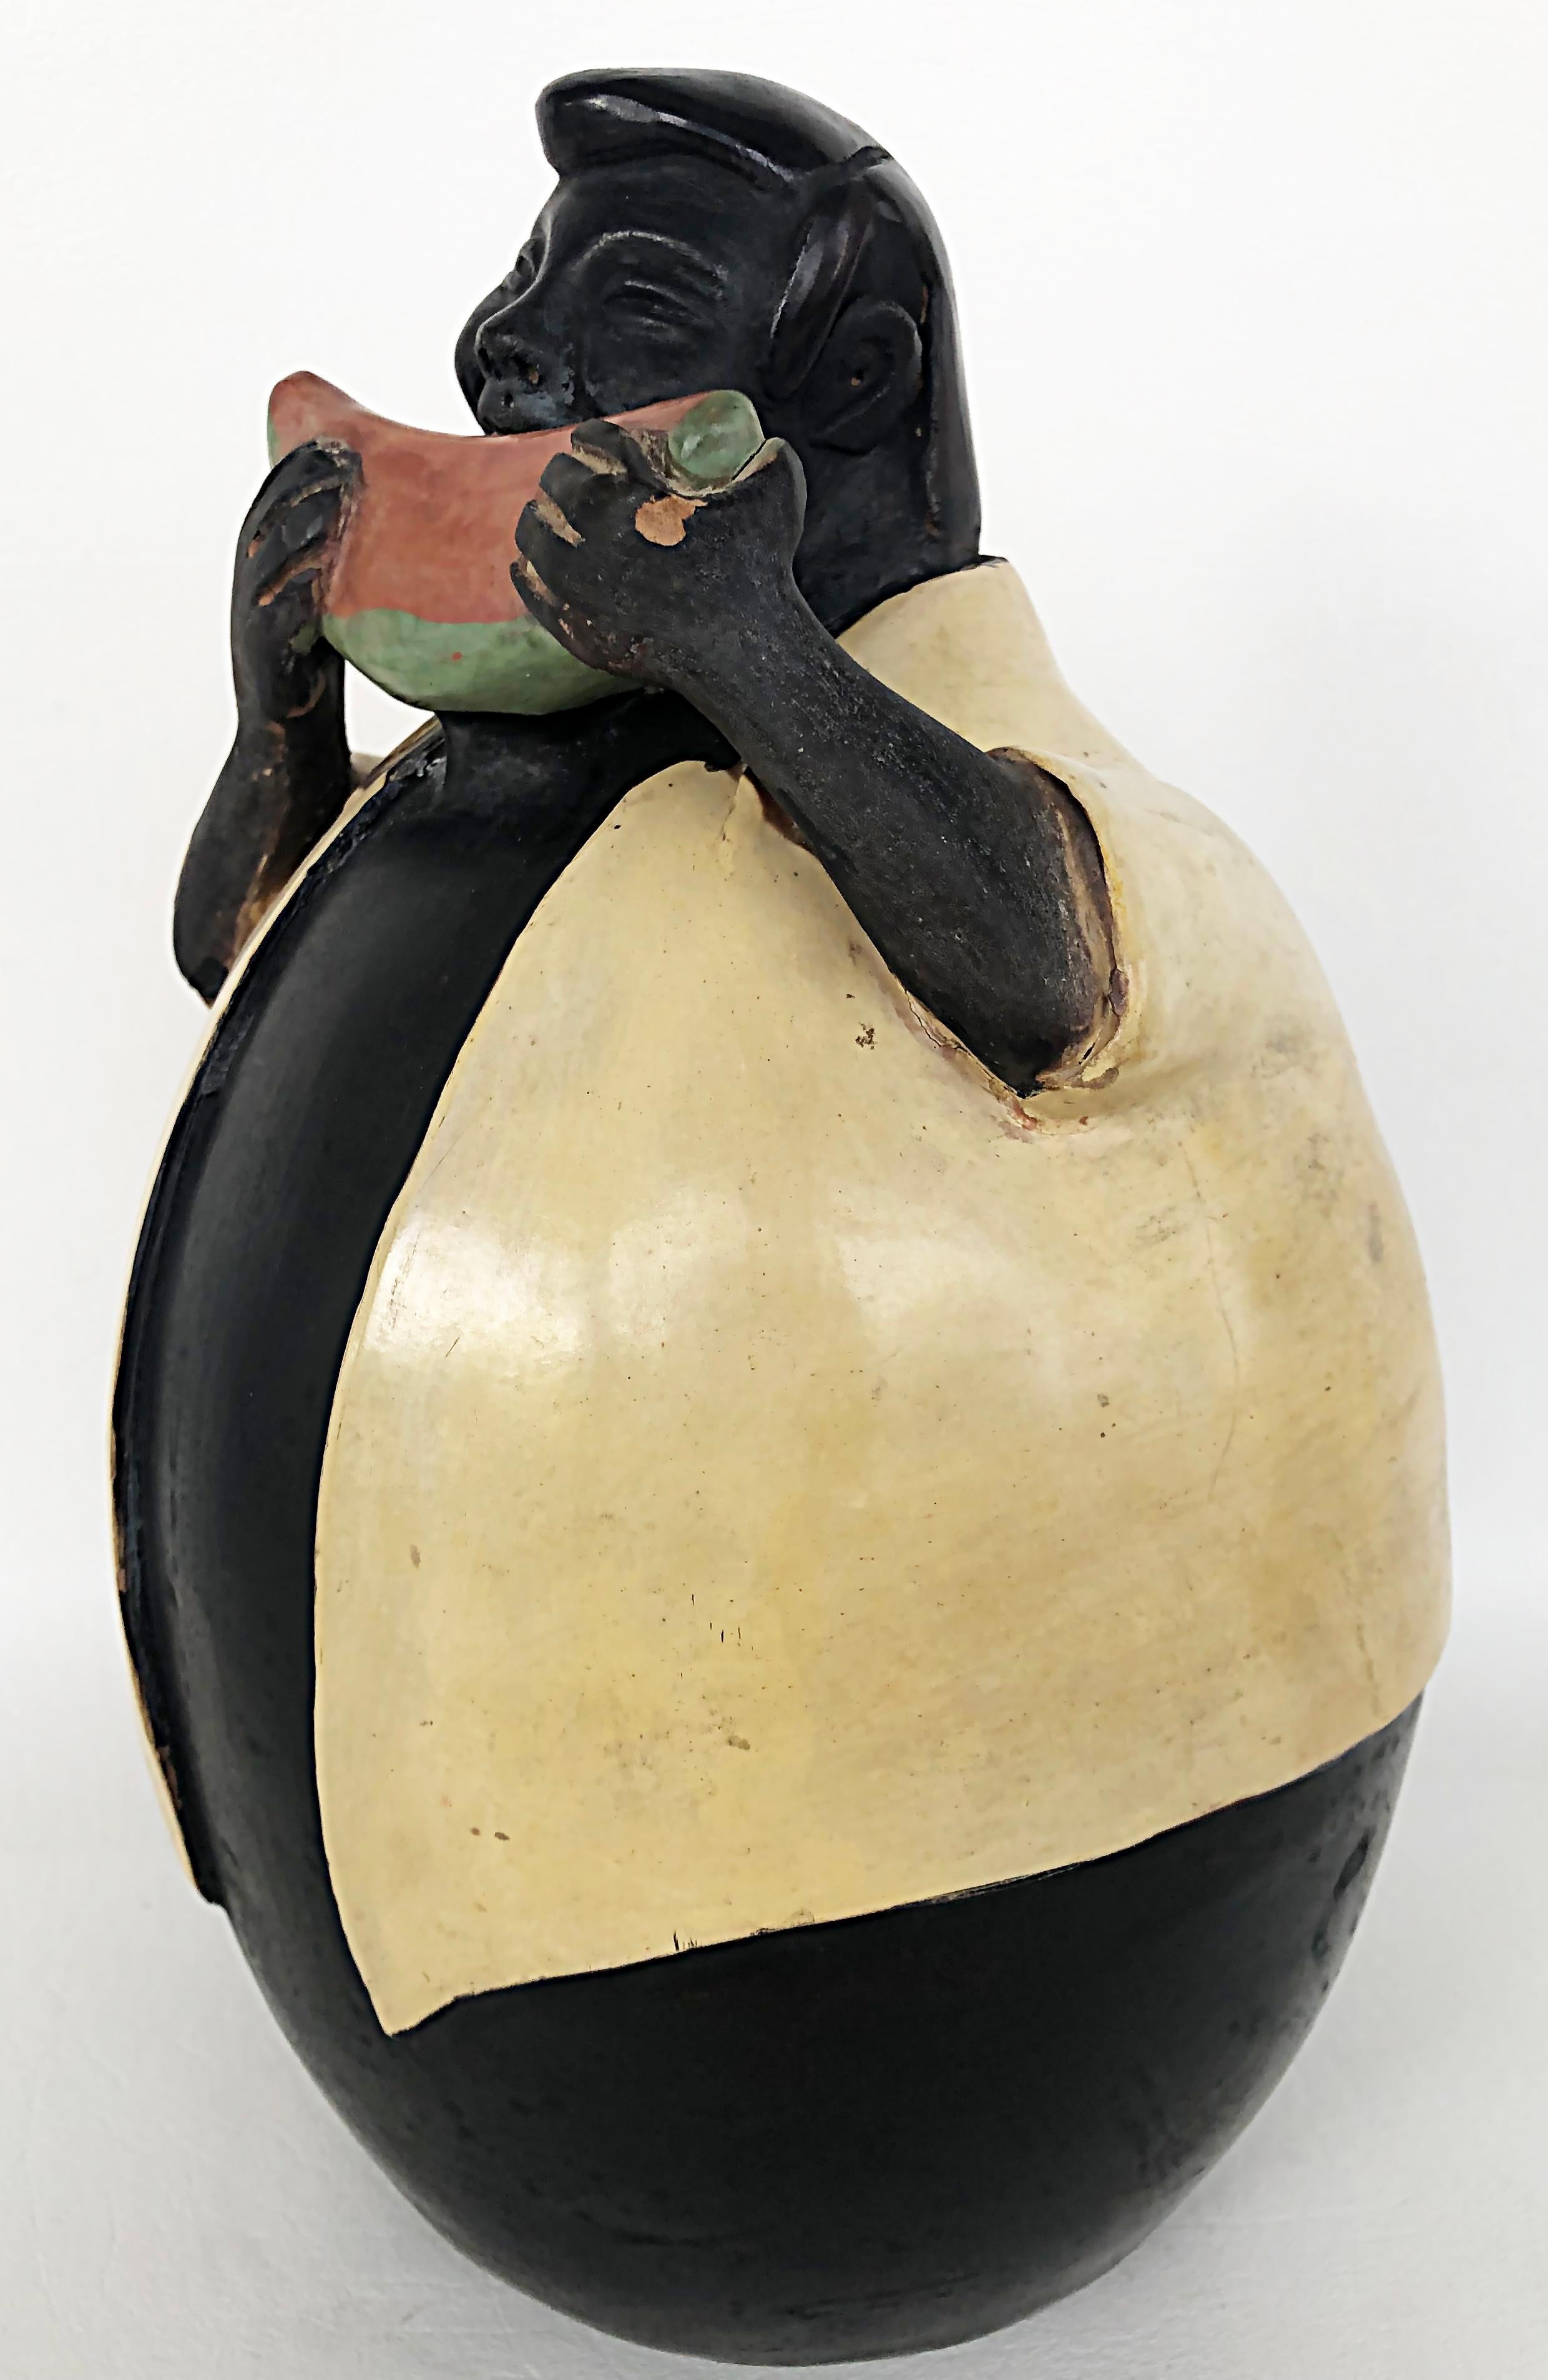 Manuel Sandoval Valez Lateinamerikanische figurative Keramikskulptur der Volkskunst

Zum Verkauf angeboten wird eine Terrakotta-Keramikskulptur im Volkskunst-Stil von Manuel Sandoval Valdez. Das Stück ist auf dem Sockel signiert. Wir bieten